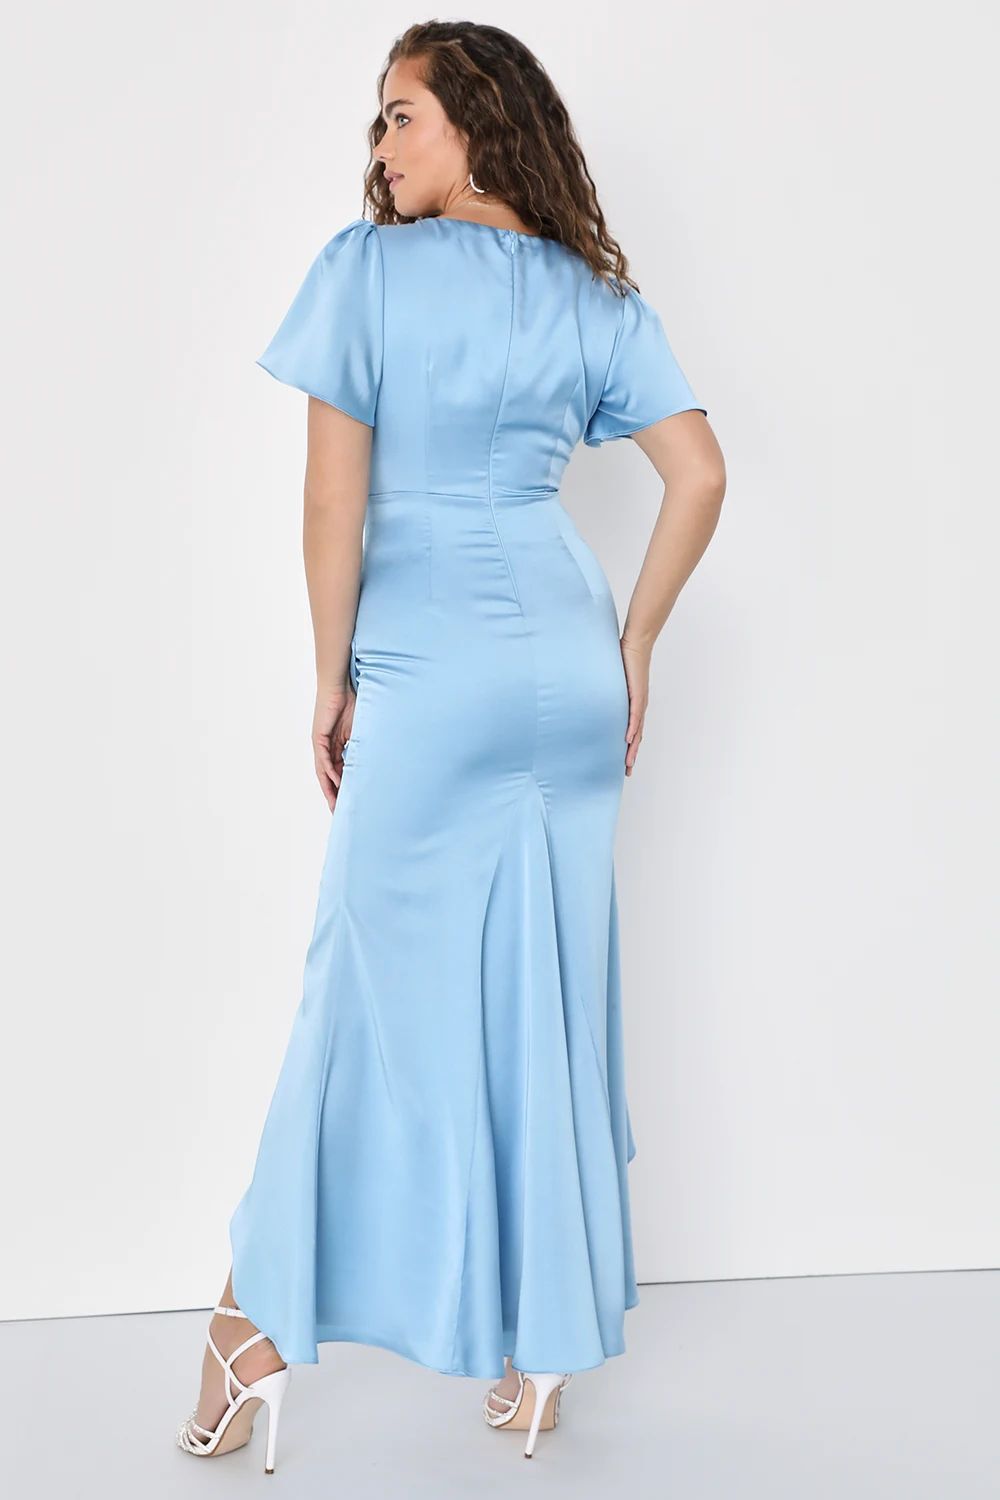 Eternal Bond Light Blue Satin Ruffled Flutter Sleeve Maxi Dress | Lulus (US)